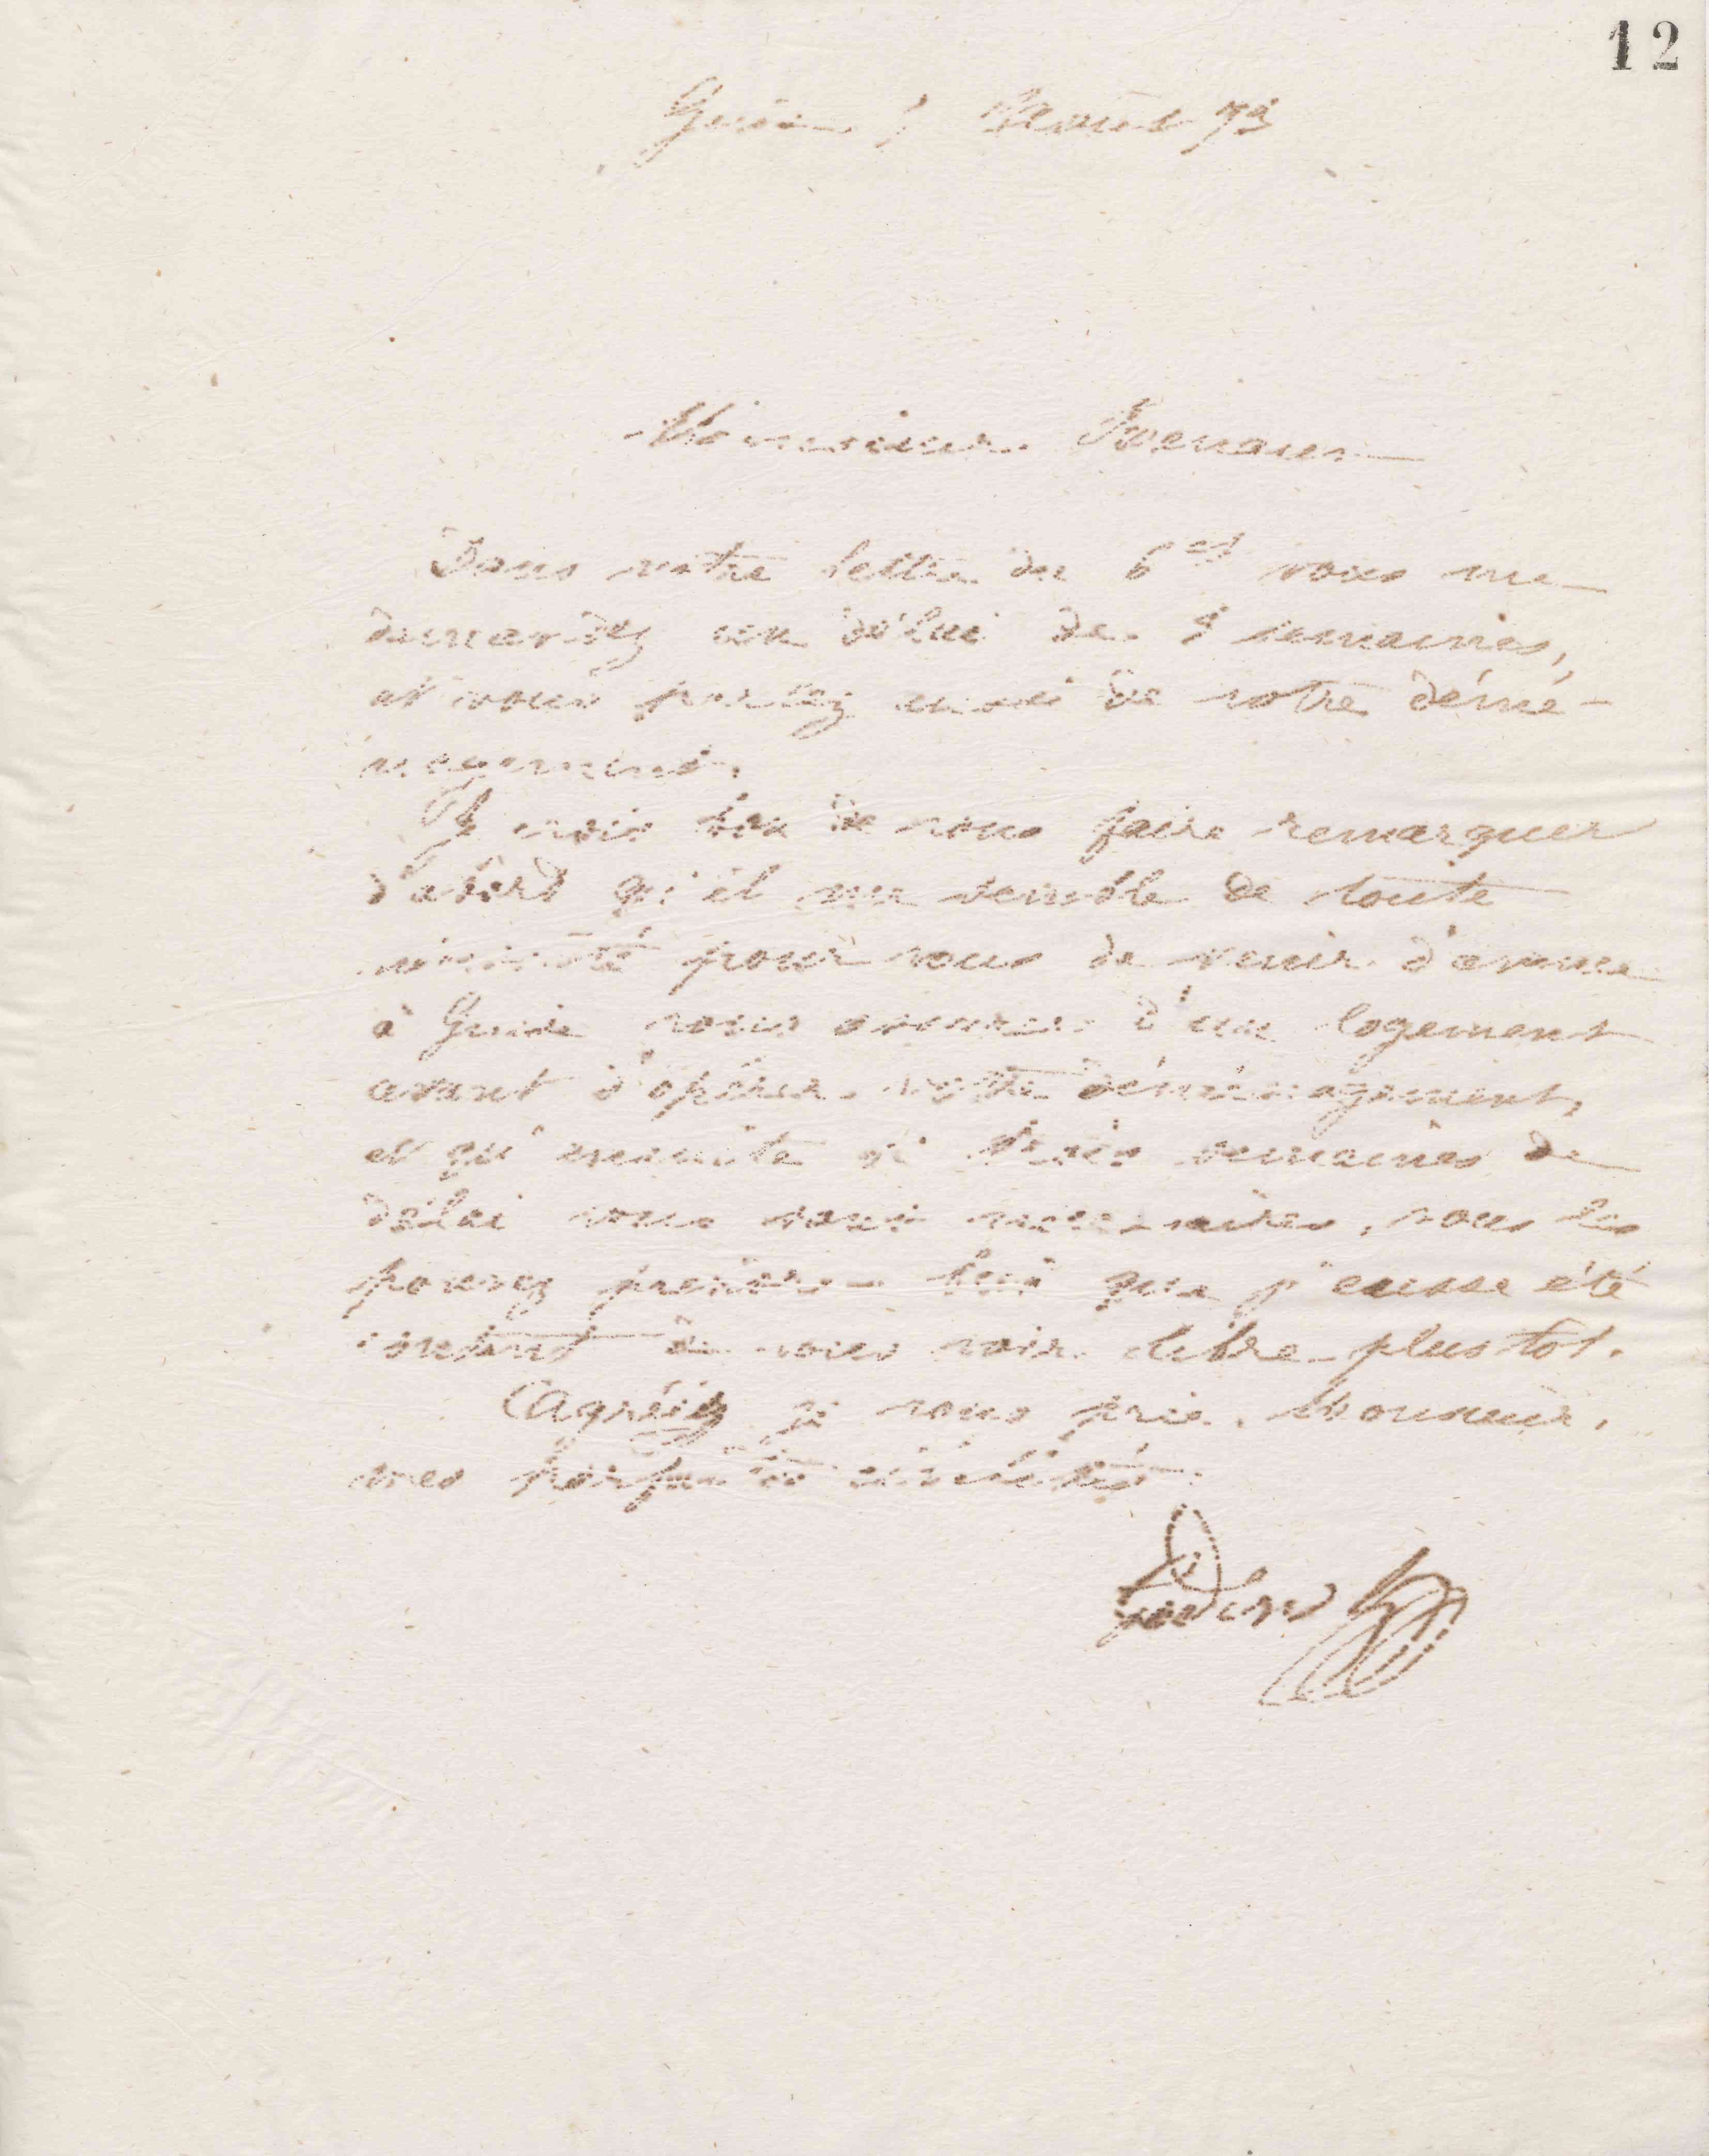 Jean-Baptiste André Godin à monsieur Renaux, 7 août 1873